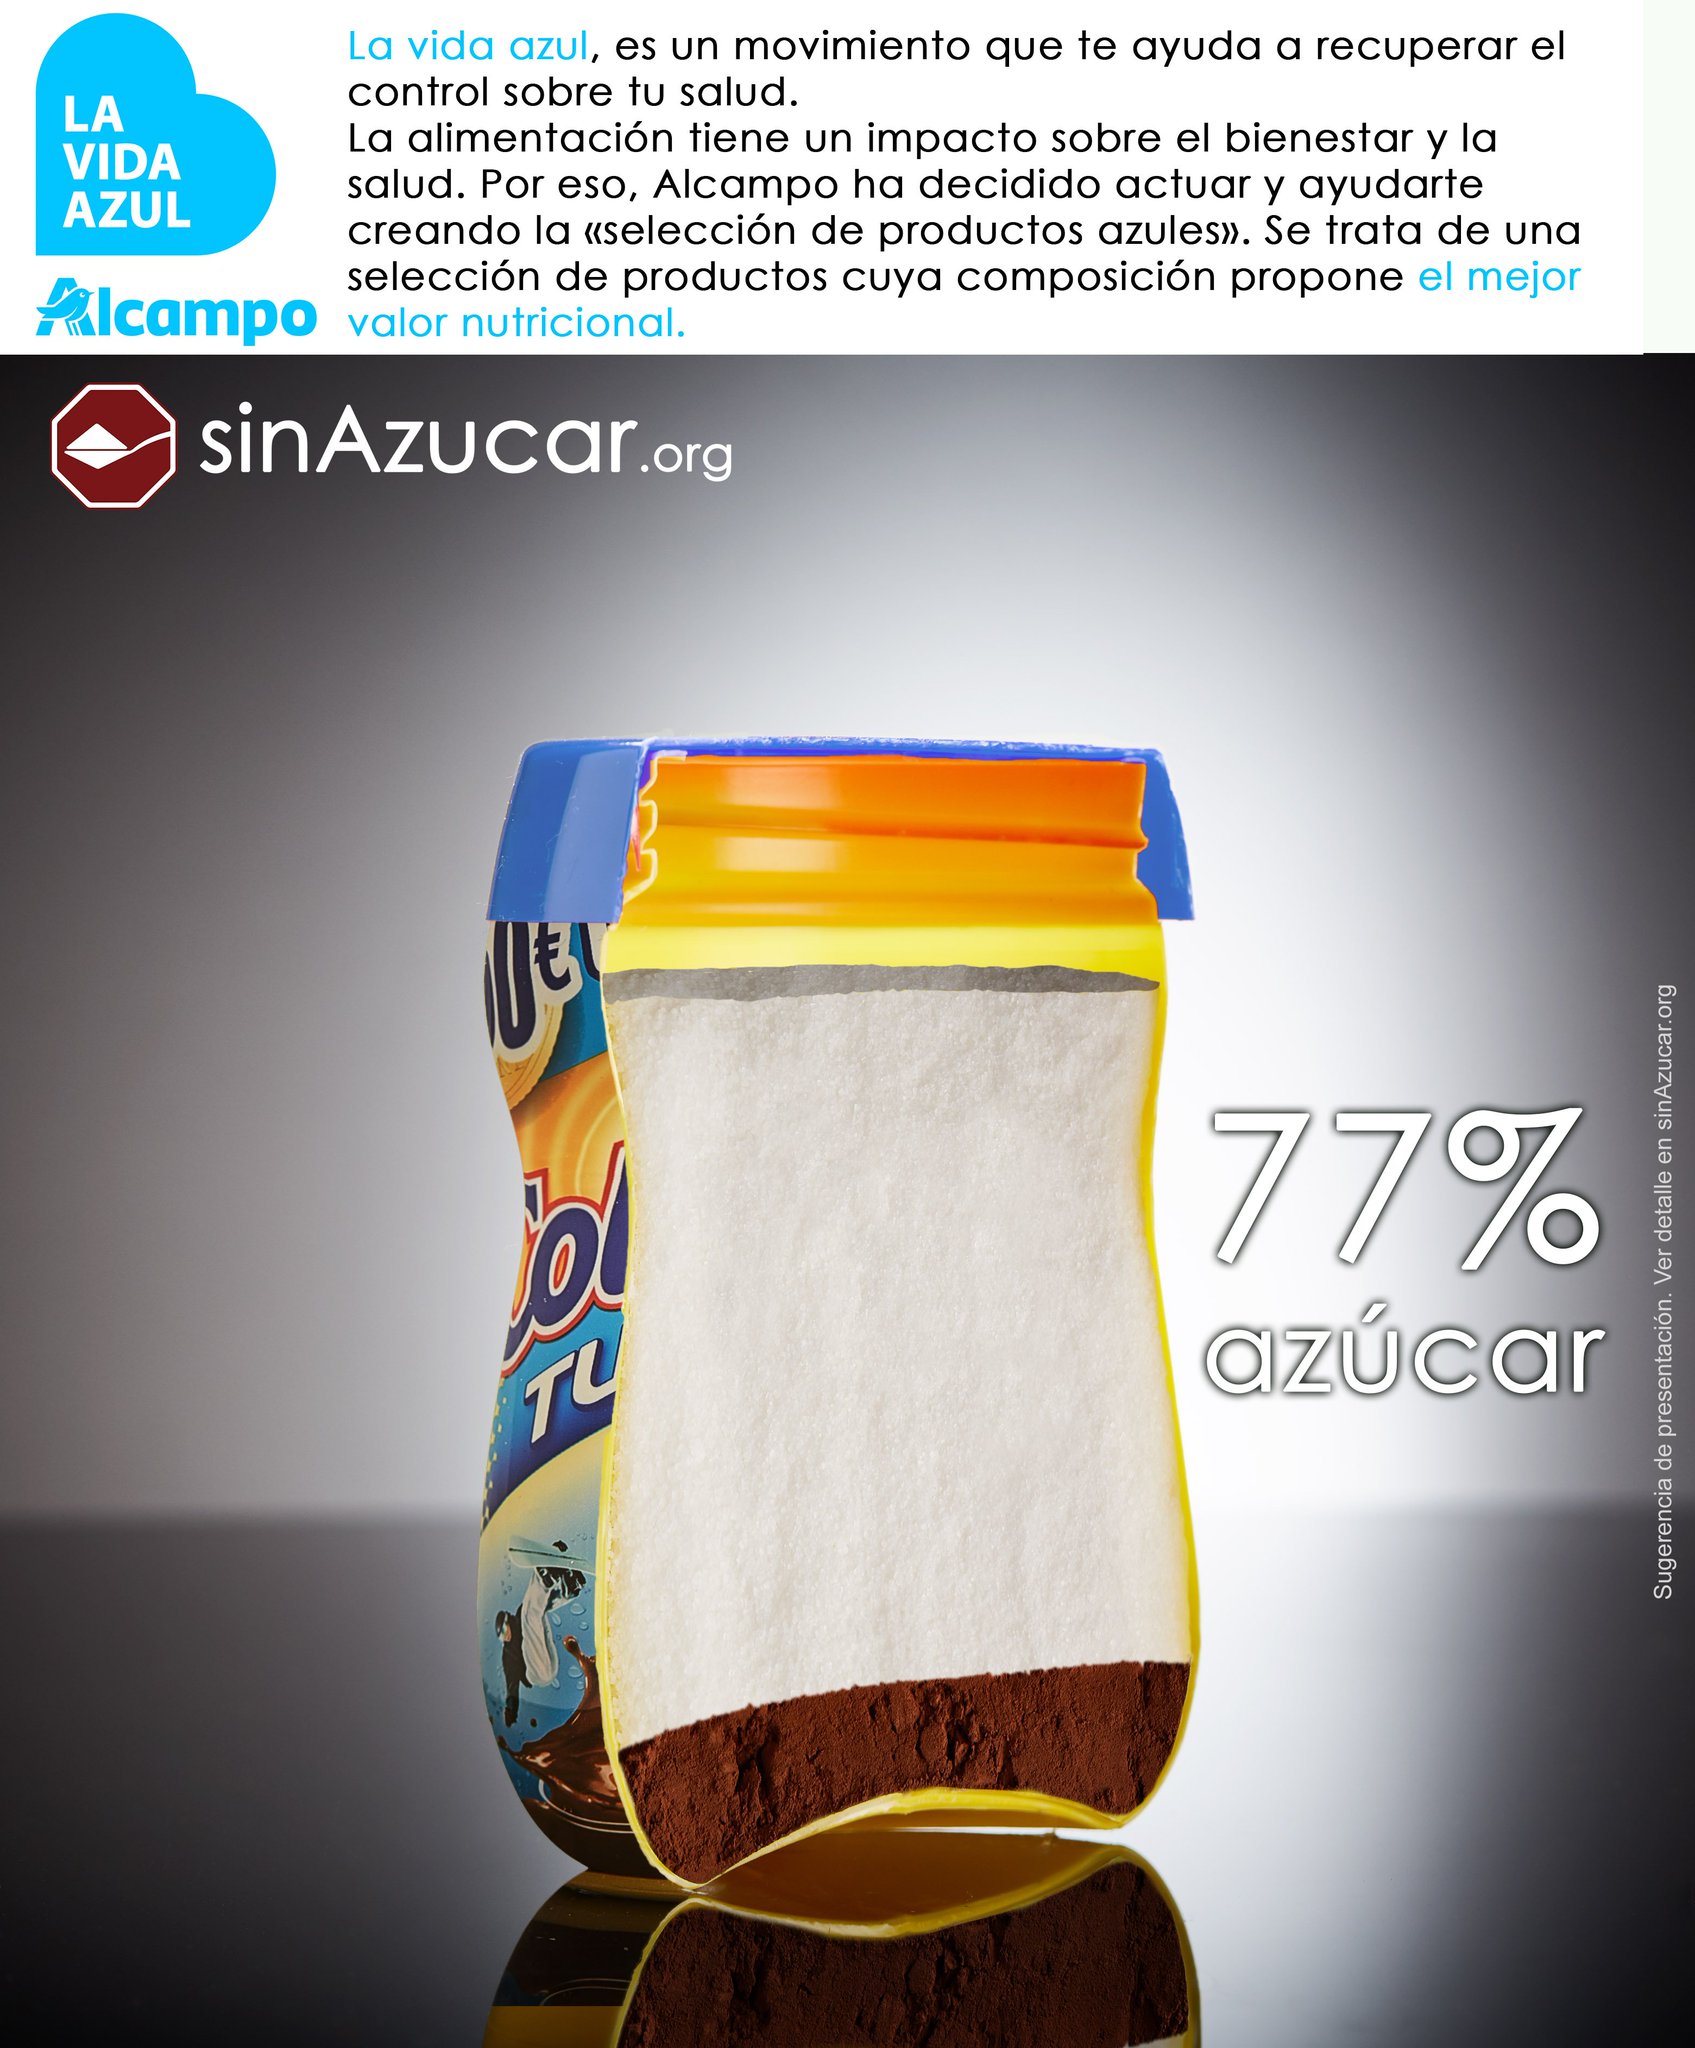 sinAzucar.org on X: Un bote de ColaCao Turbo, contiene el 77% de azúcar.  Forma parte de la selección #LaVidaAzul de @alcampo #BoicotAlcampo   / X